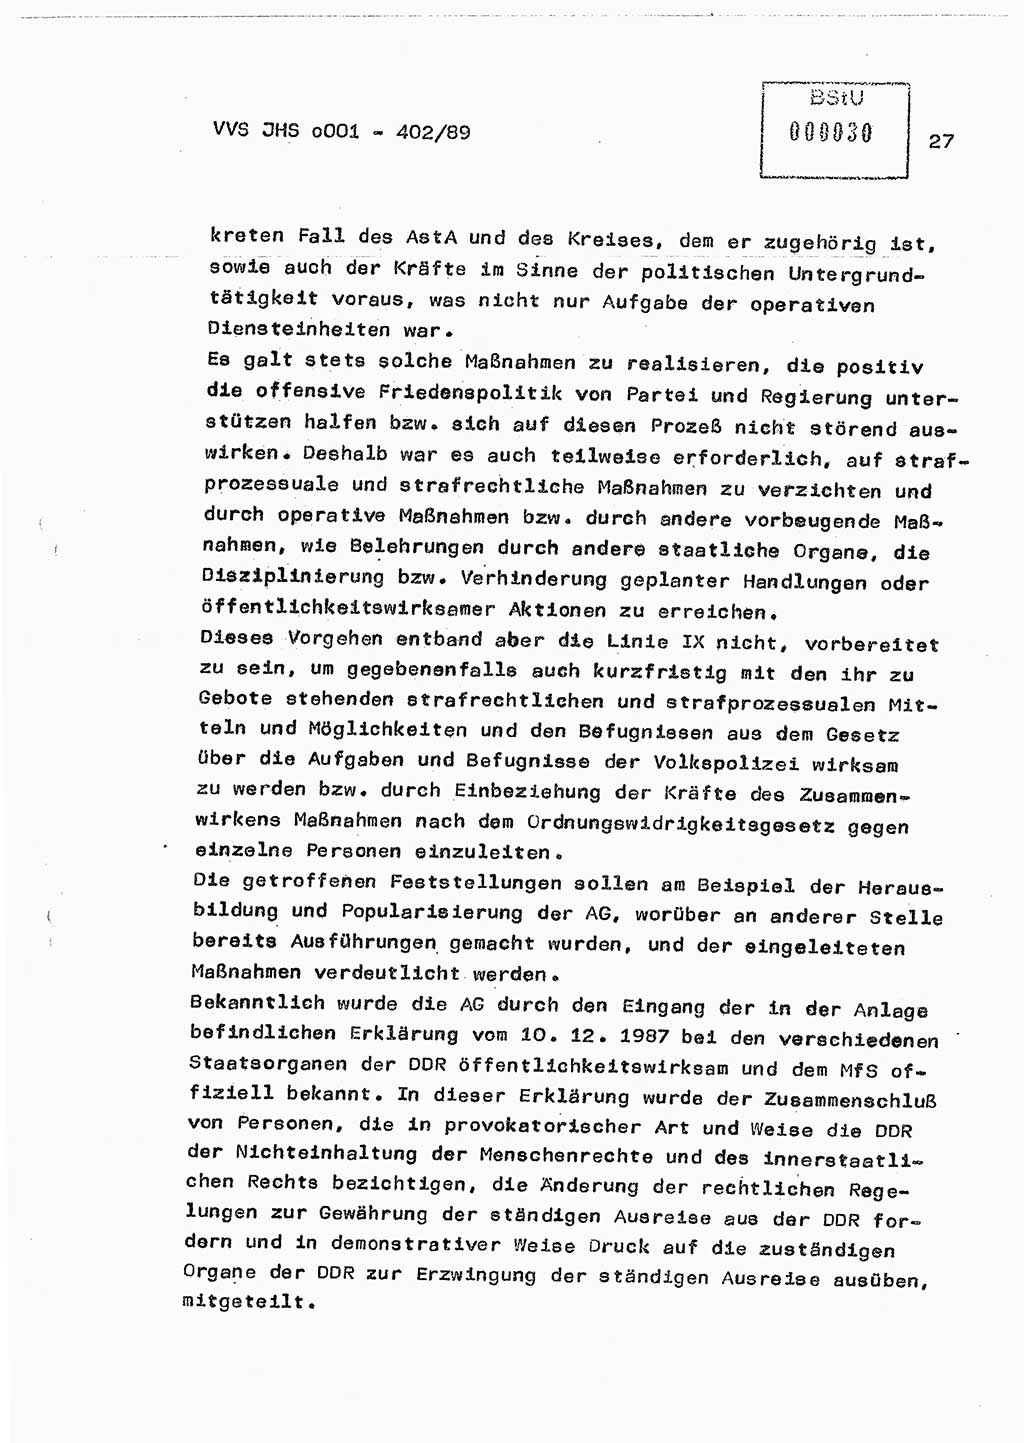 Diplomarbeit Major Günter Müller (HA Ⅸ/9), Ministerium für Staatssicherheit (MfS) [Deutsche Demokratische Republik (DDR)], Juristische Hochschule (JHS), Vertrauliche Verschlußsache (VVS) o001-402/89, Potsdam 1989, Seite 27 (Dipl.-Arb. MfS DDR JHS VVS o001-402/89 1989, S. 27)